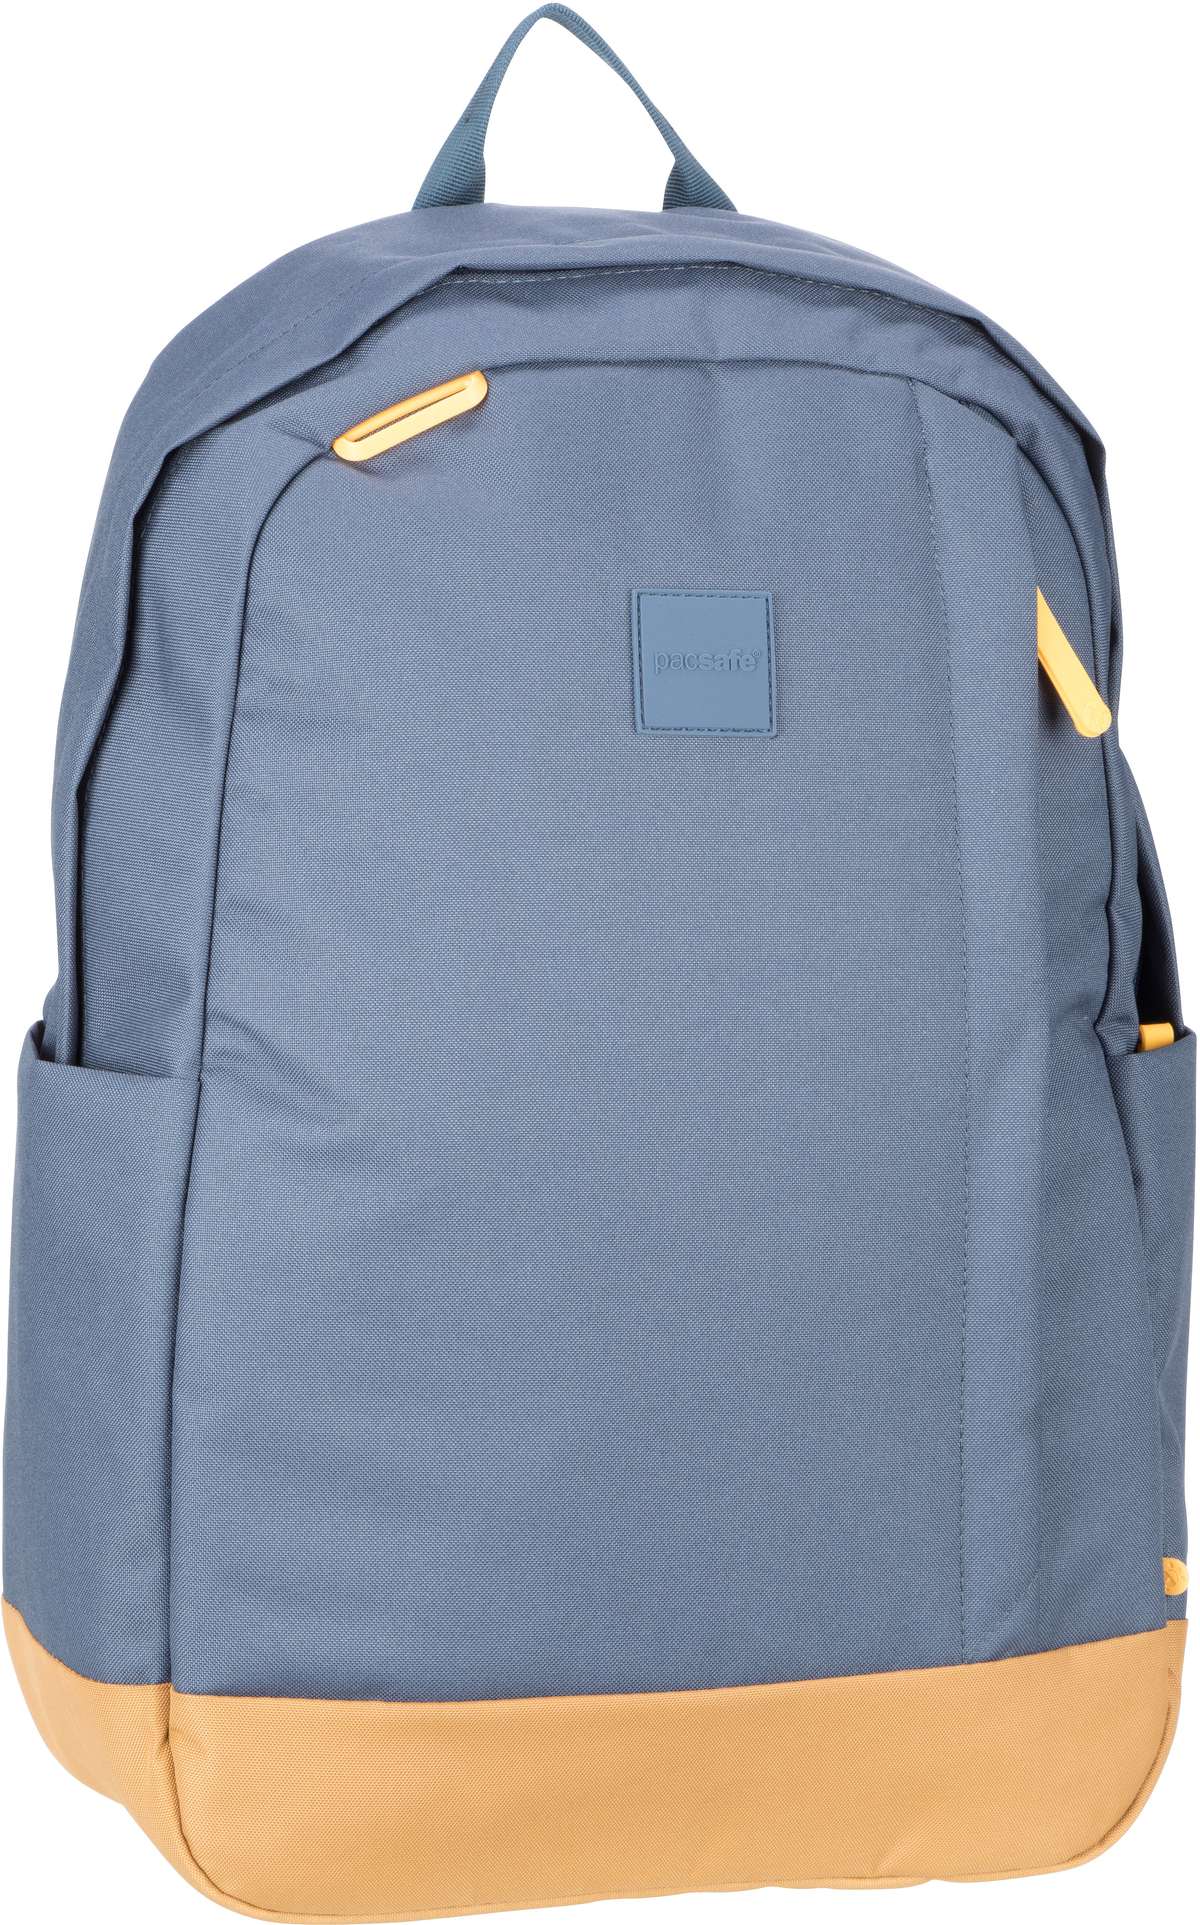 Pacsafe GO 25L Backpack  in Coastal Blue (25 Liter), Rucksack / Backpack